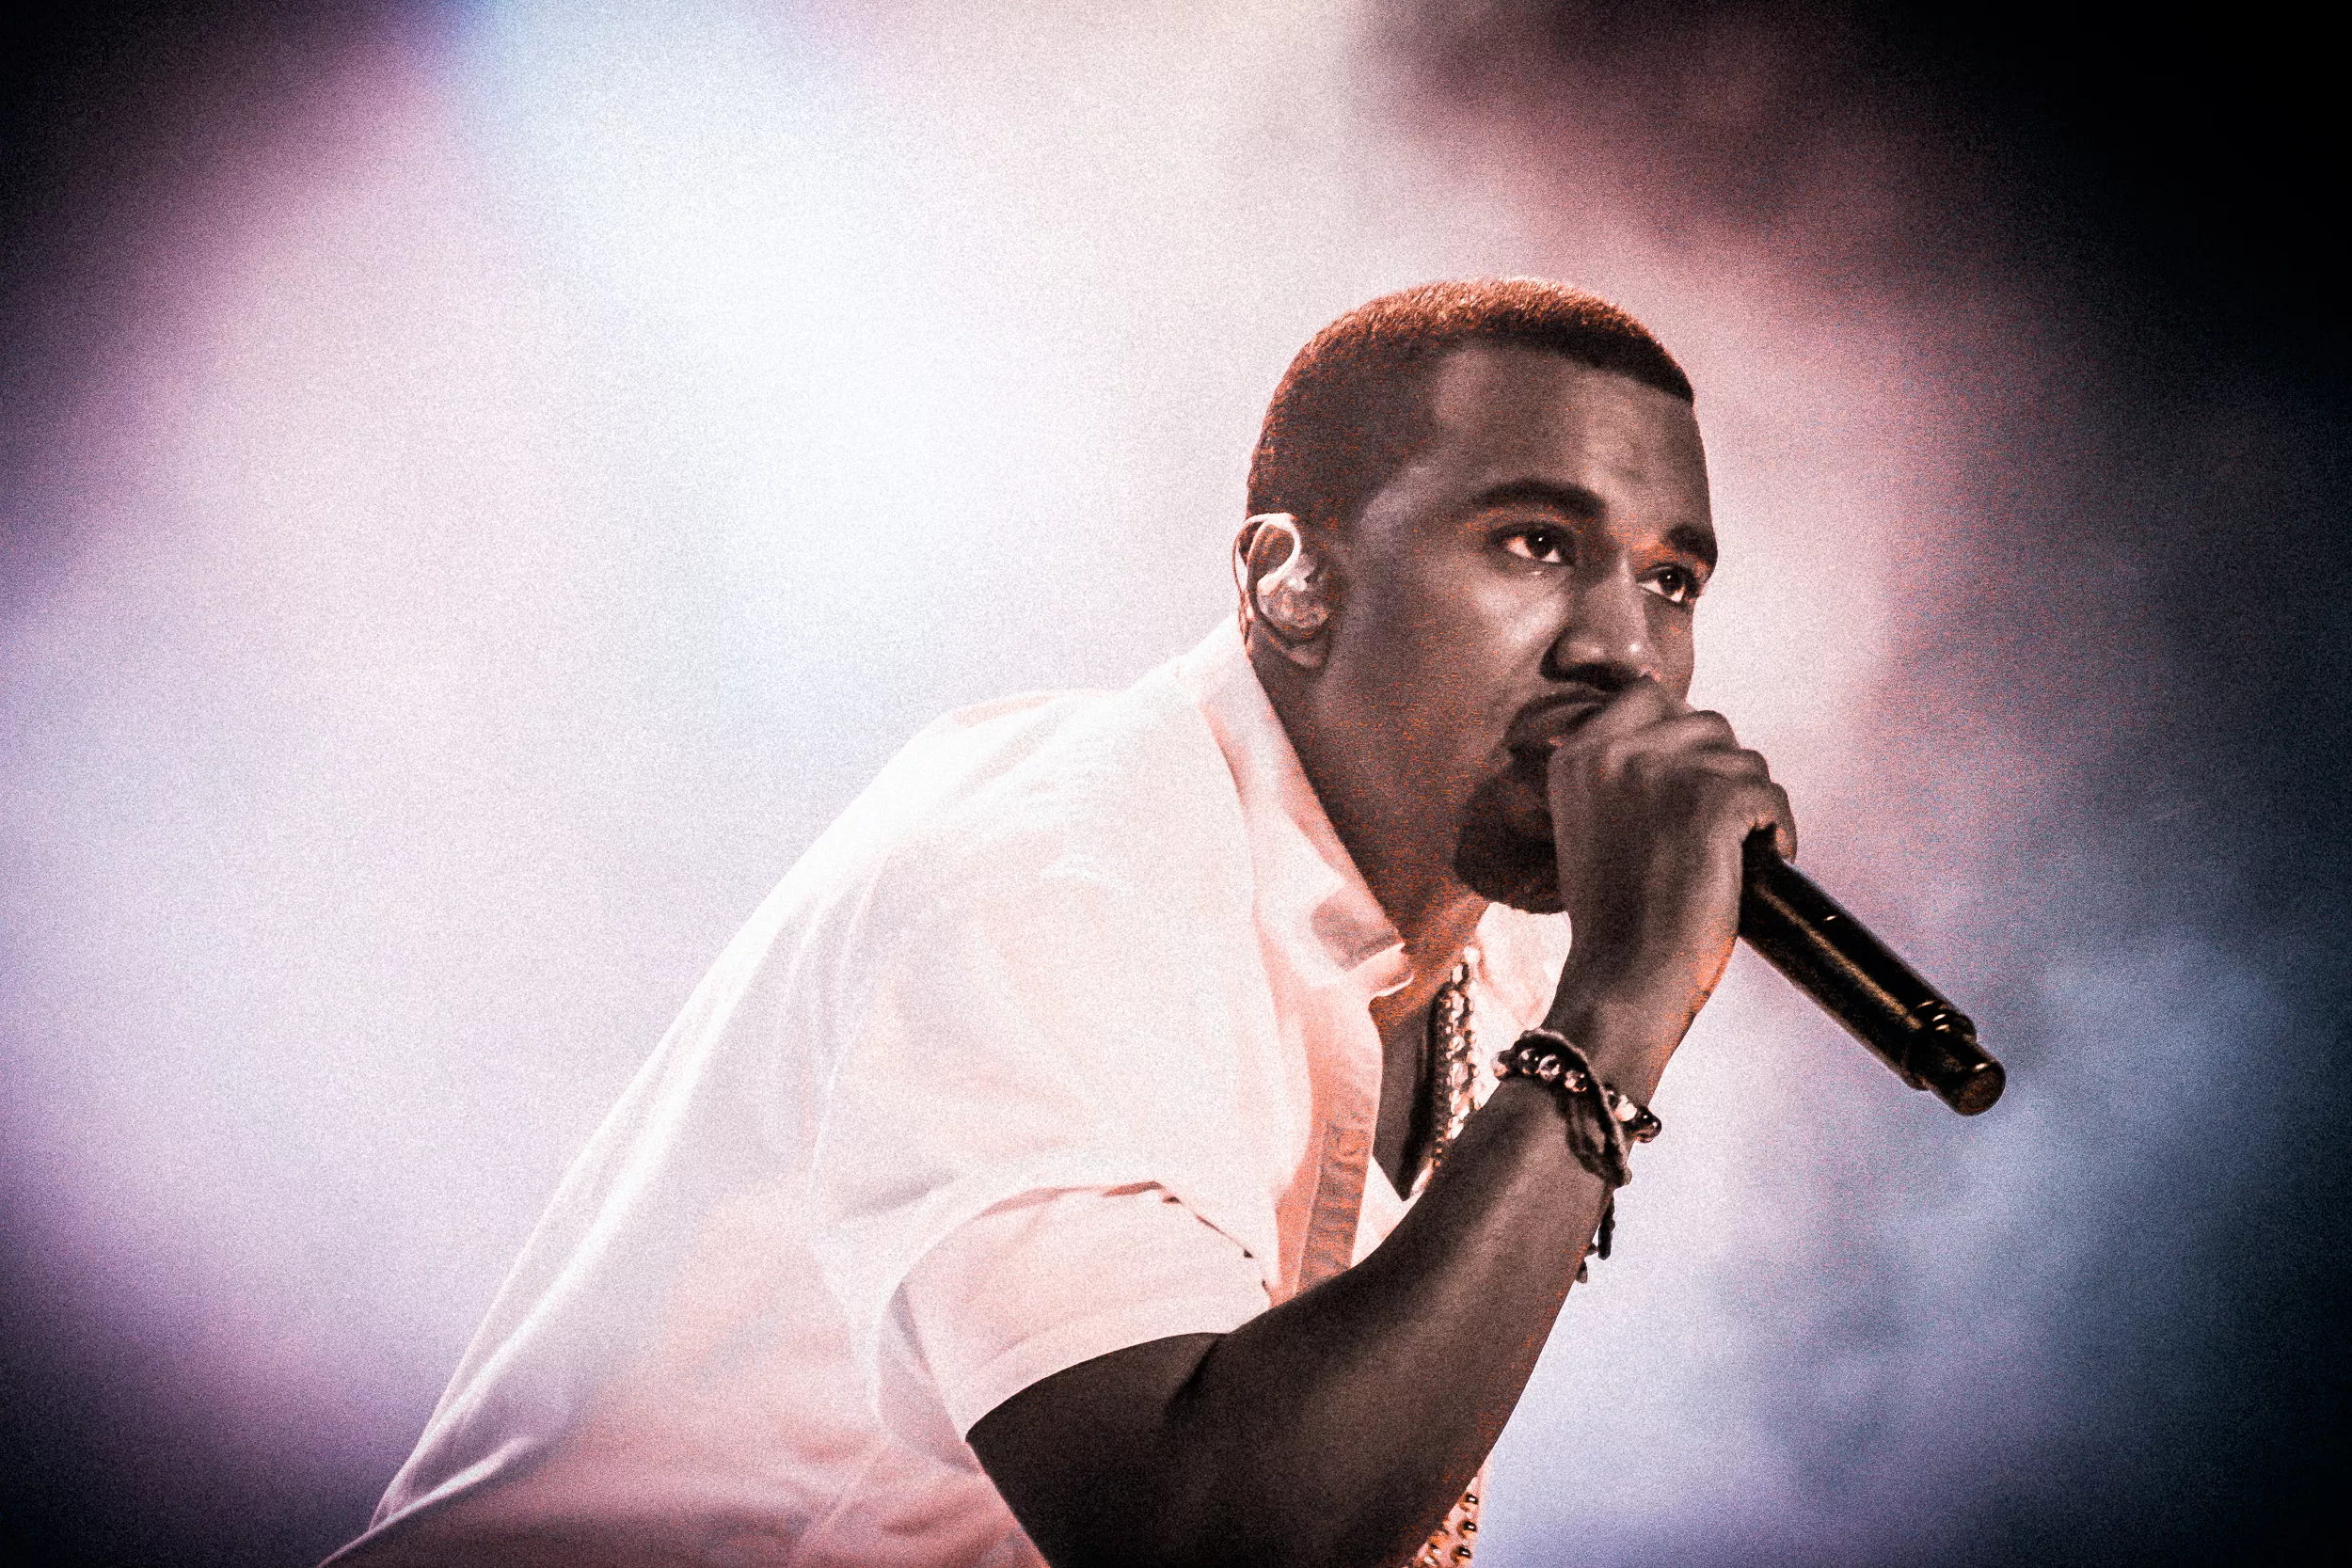 En superfans forsvar: Tre grunde til (stadig) at elske Kanye West 